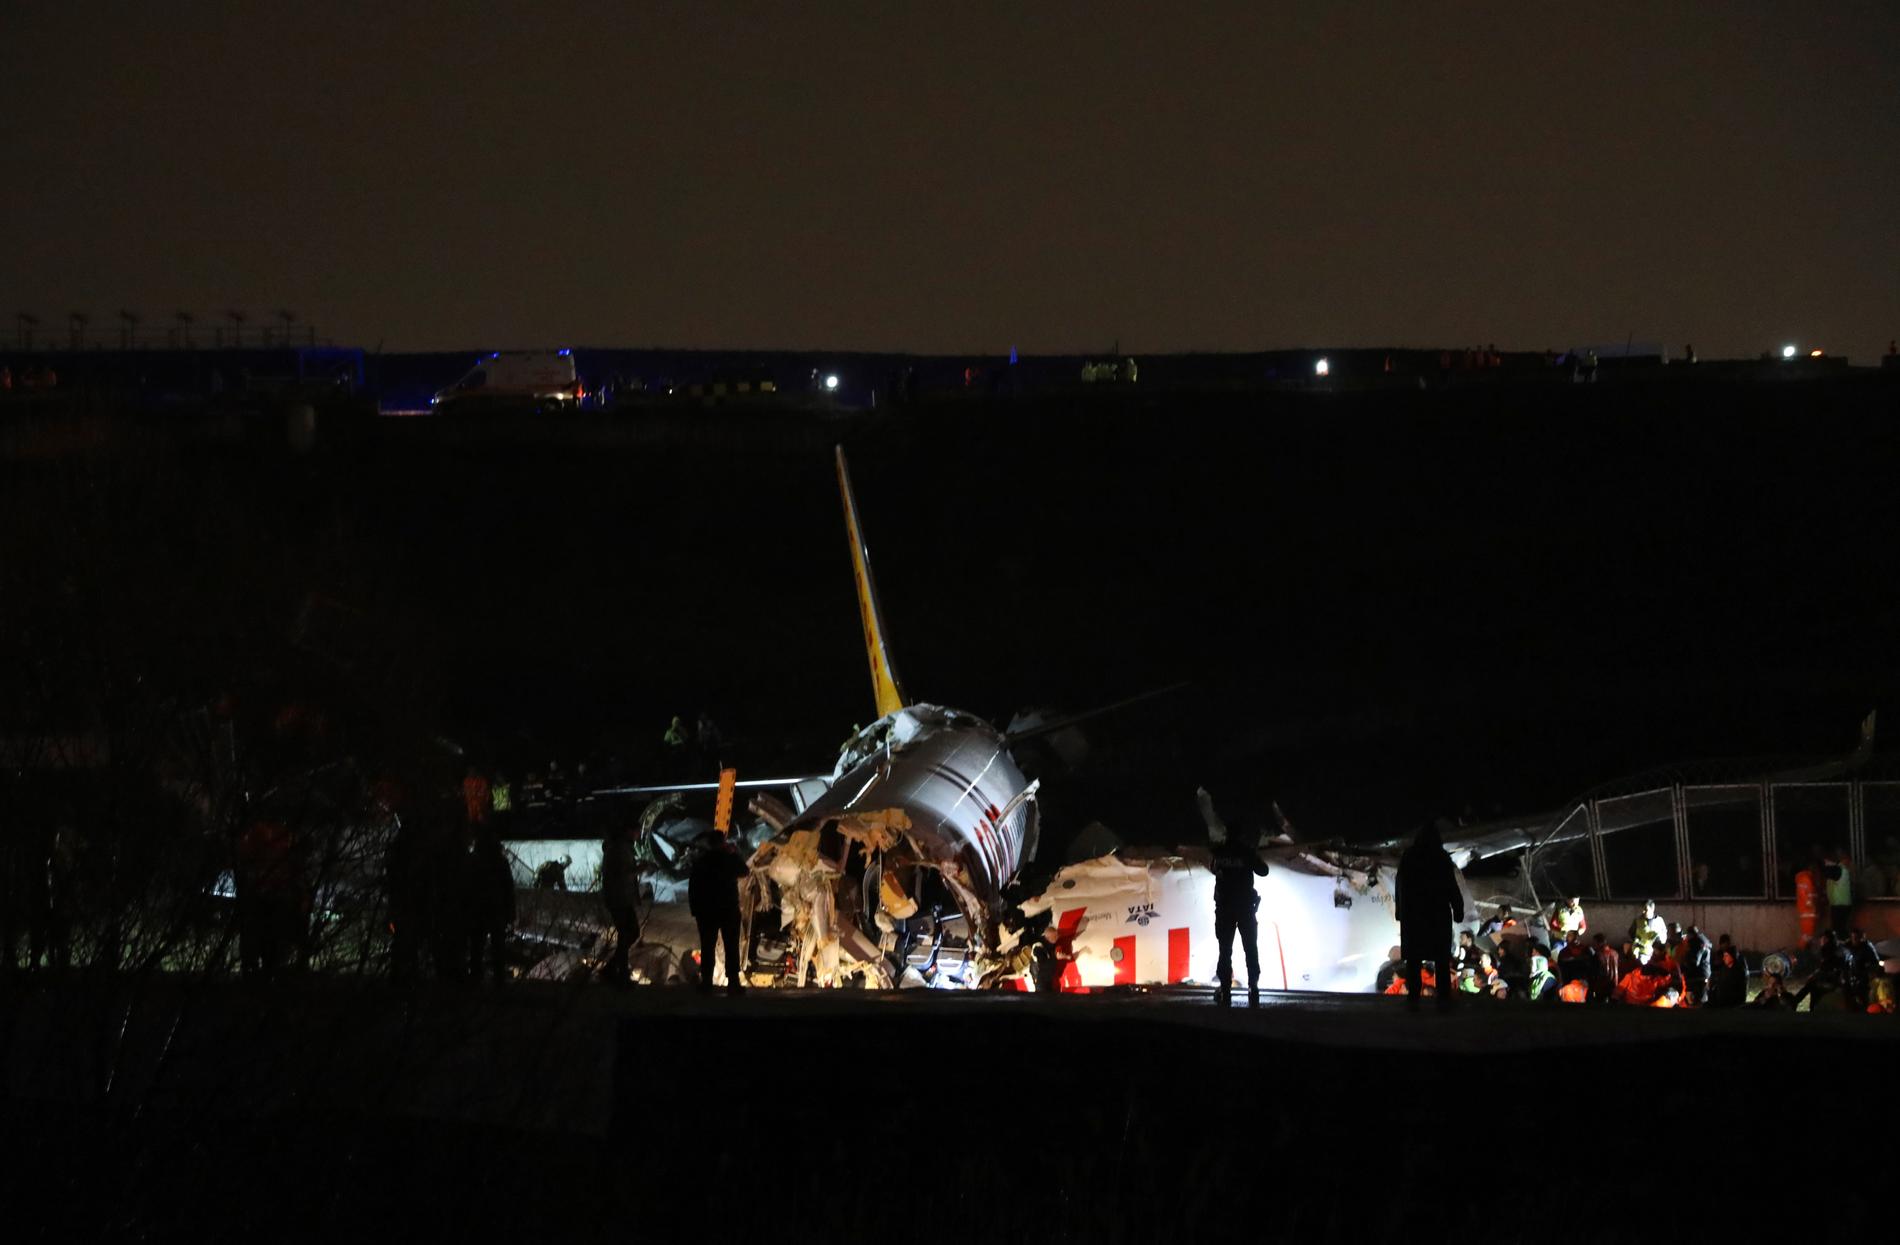 HARDT VÆR: Årsaken til ulykken var en røff landing i hardt vær, ifølge tyrkiske myndigheter. 